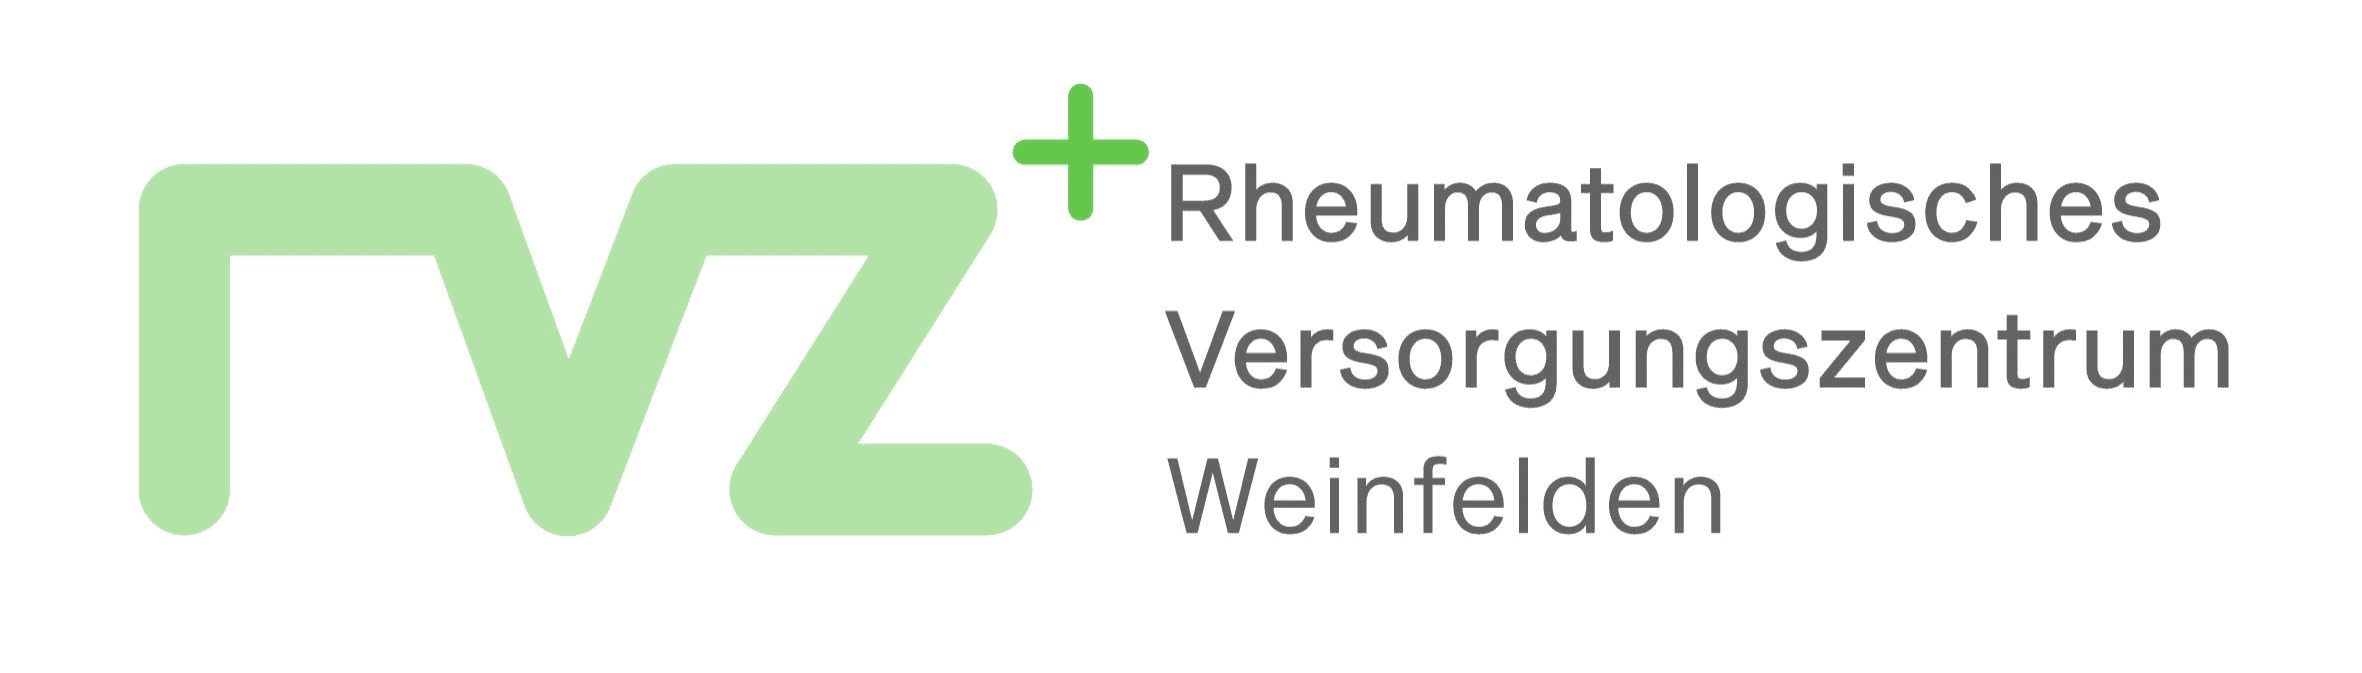 Rheumatologisches Versorgungszentrum Weinfelden